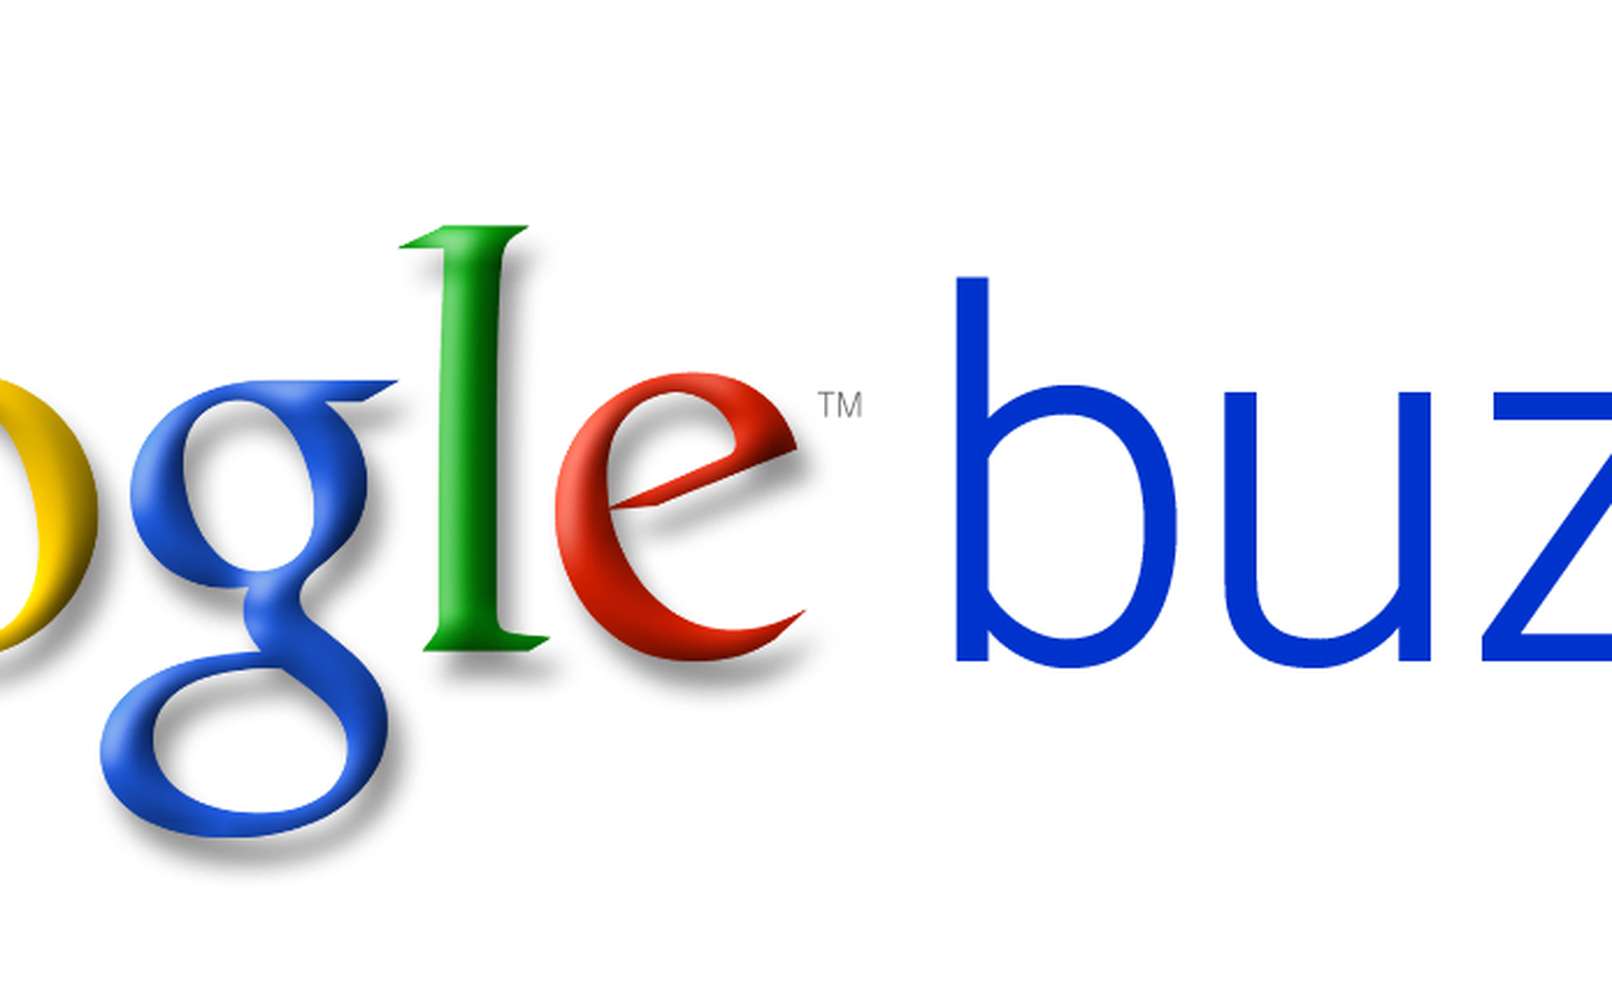 Google Buzz : beaucoup de buzz pour rien, finalement... © Google